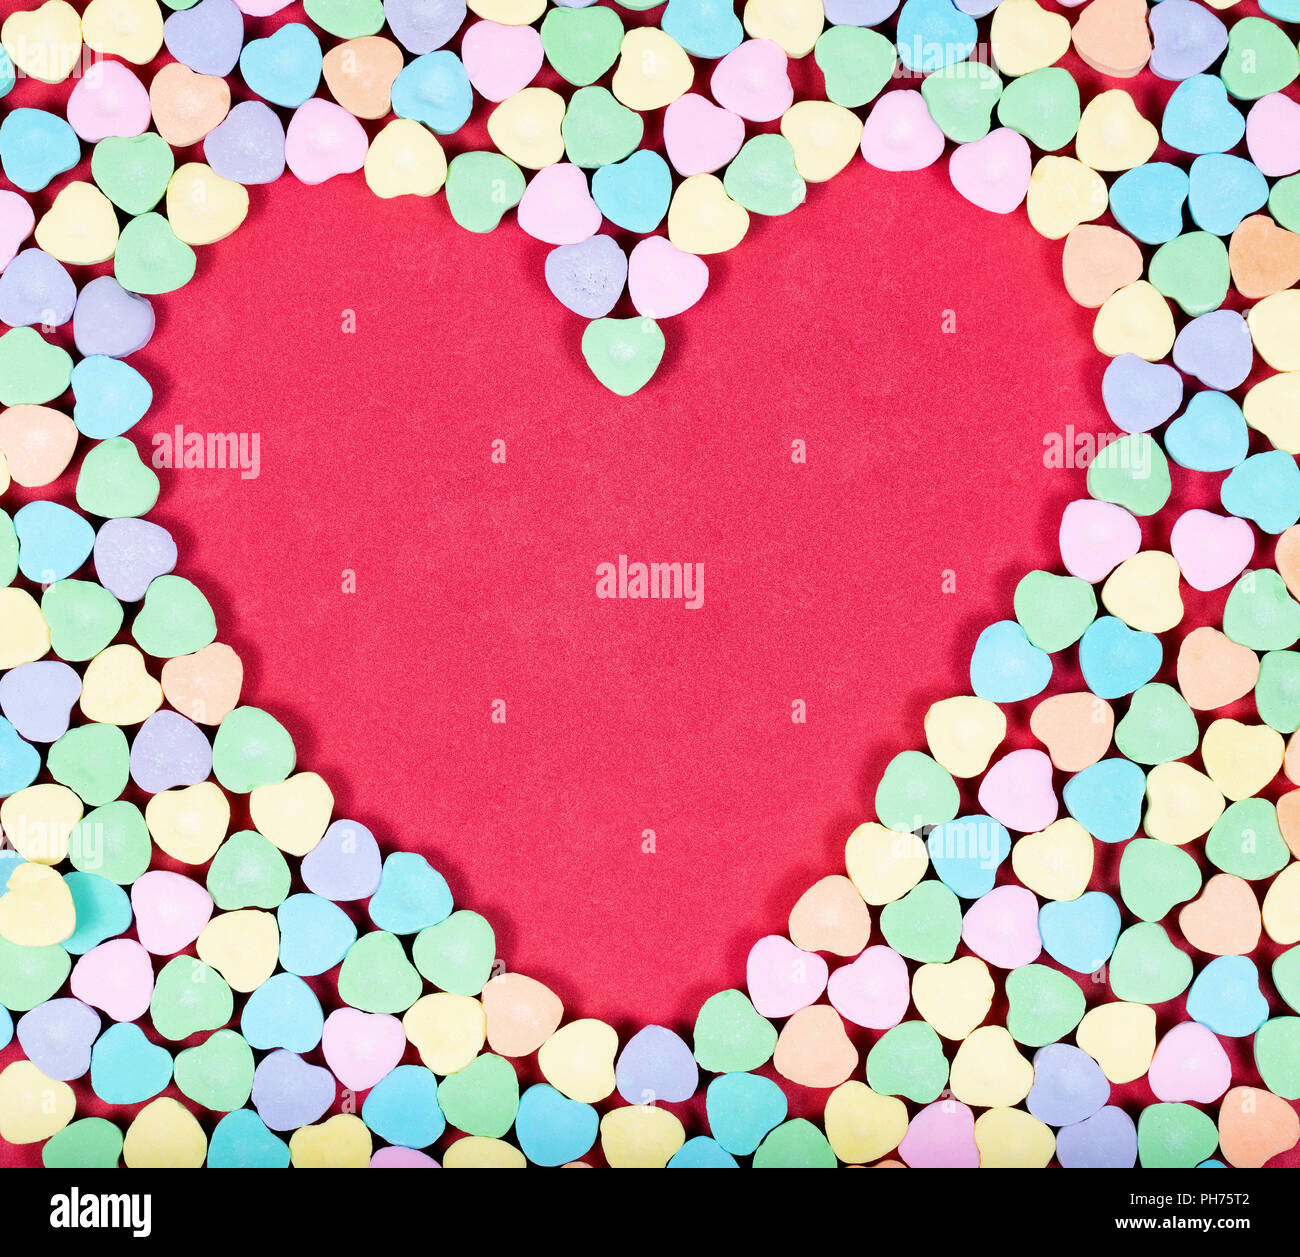 El espacio en blanco del corazón con caramelos de colores en el exterior Foto de stock